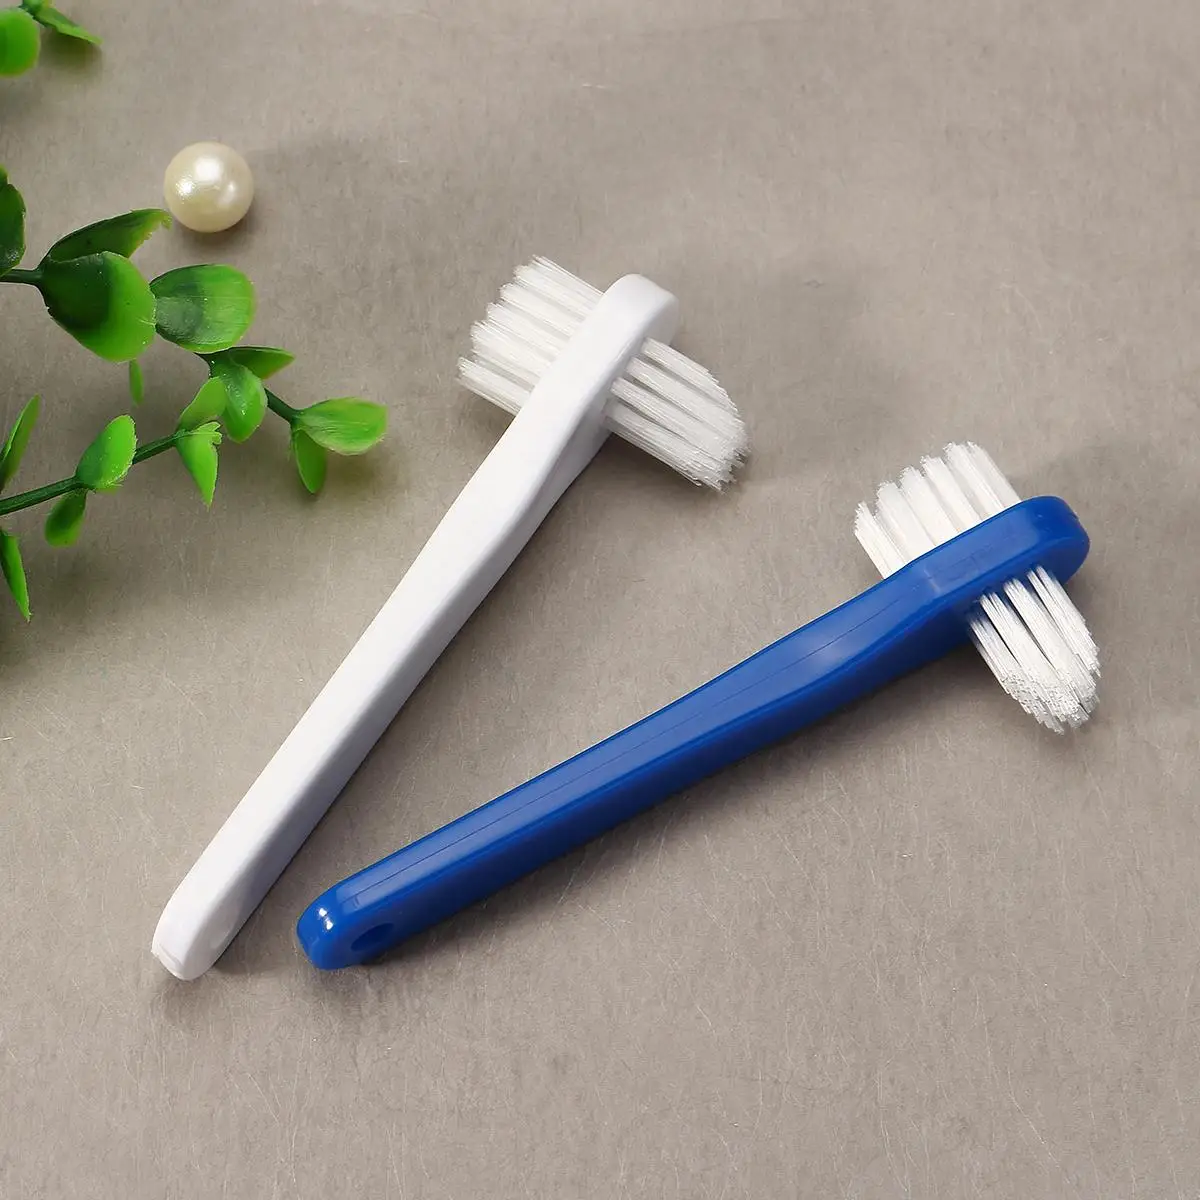 

T-shape New Denture Dedicated Brush Toothbrush Dual Heads False Teeth Brushes Gum Cleaner For Men Women 2017 Blue White Color